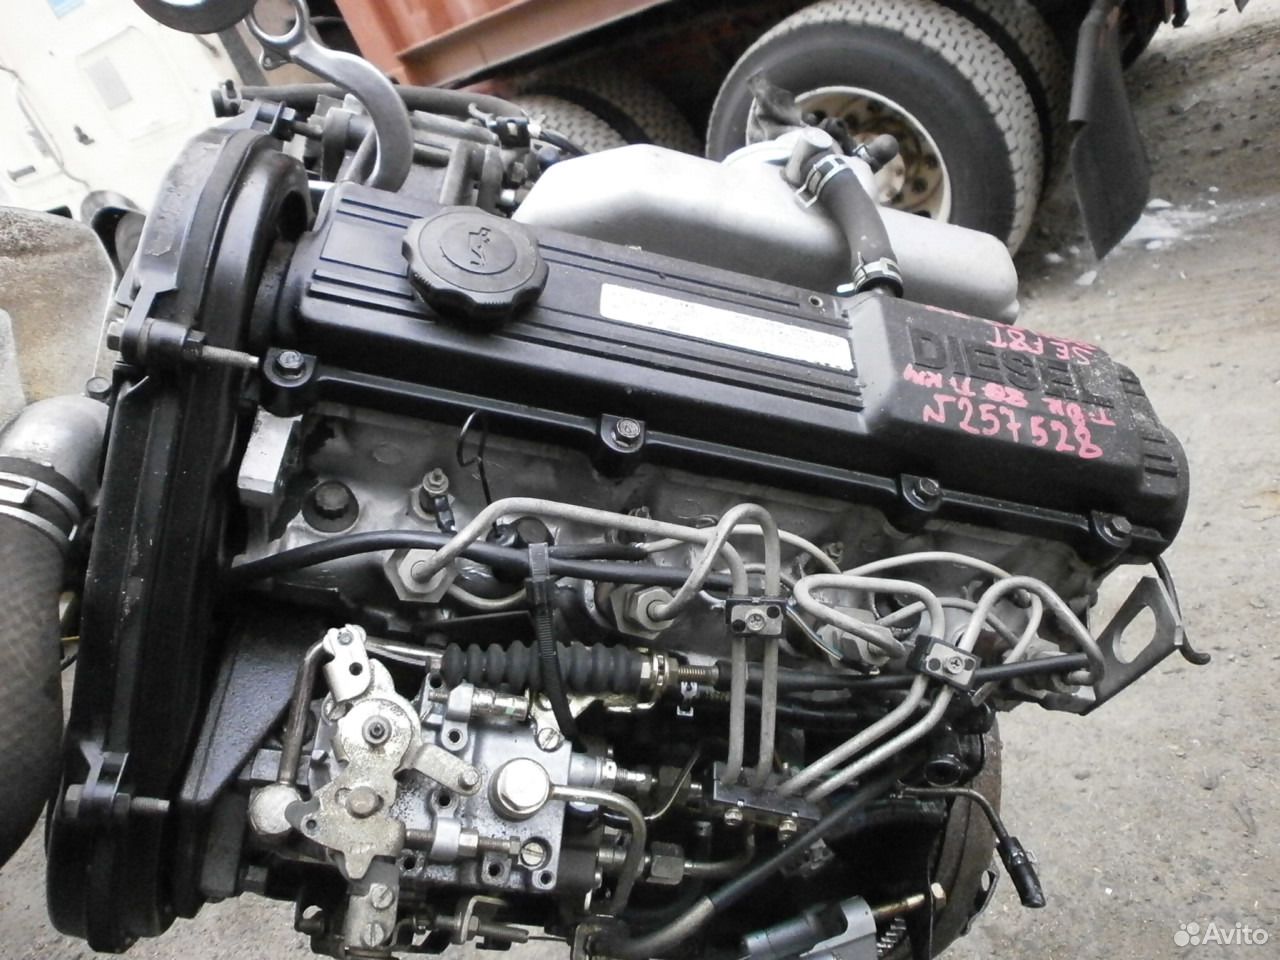 Б у двигатели россия. RF двигатель Мазда. Двигатель rf7 2.0 дизель. ДВС RT RF 2.0 дизель. Двигатель RF 2.0 дизель Mazda Bongo.